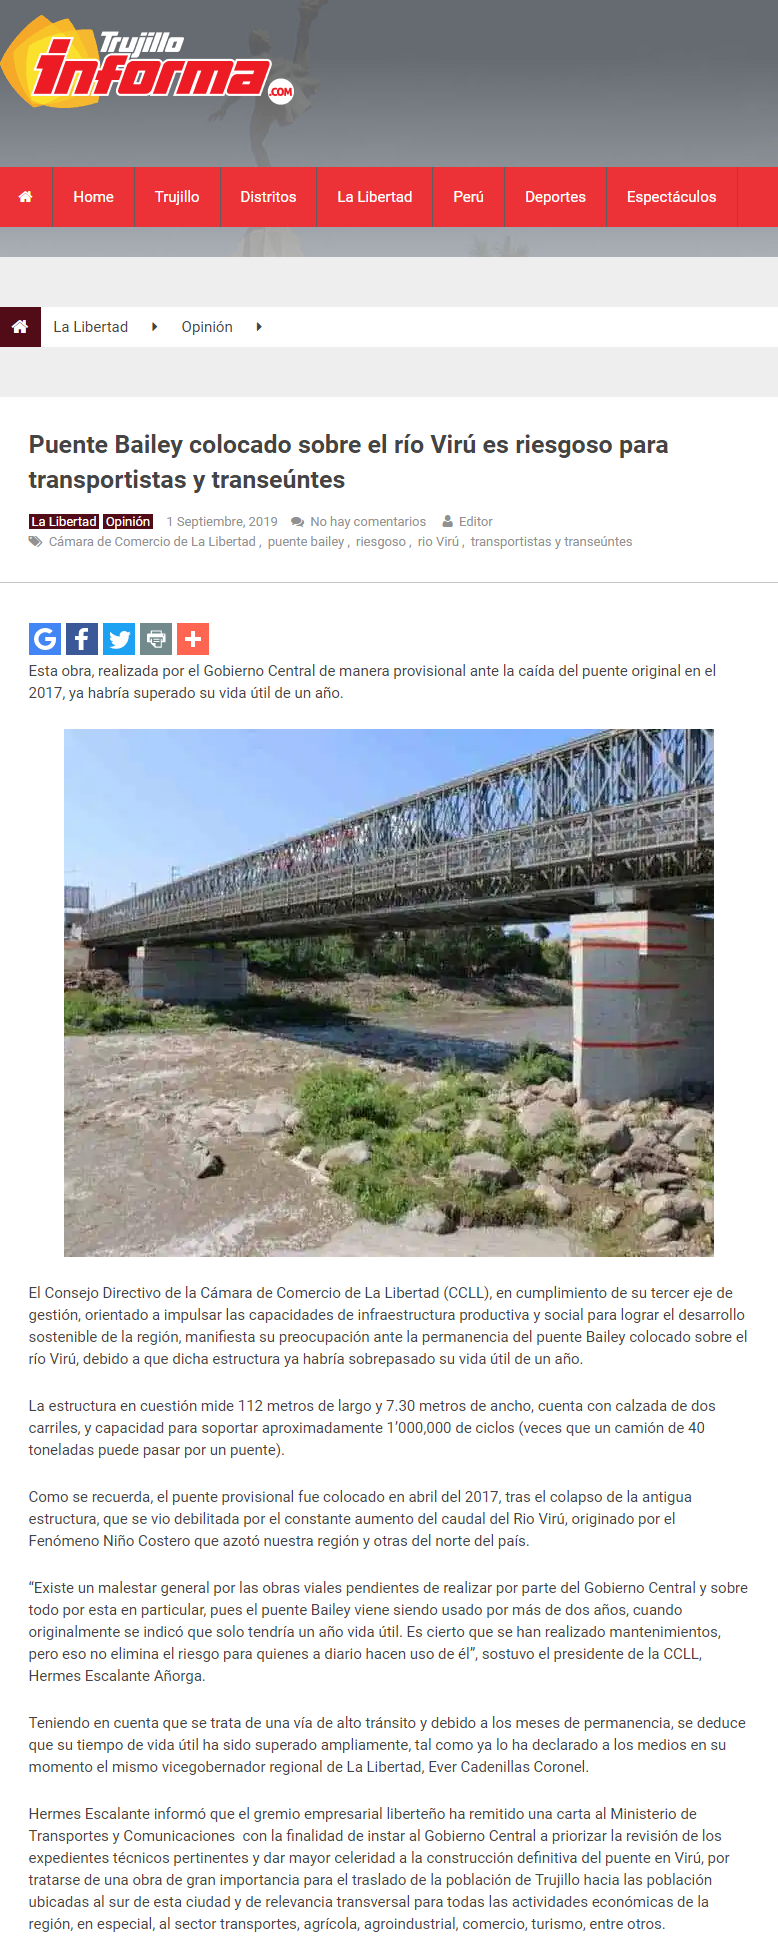 02.09.19.02 Trujillo Informa Puente Bailey colocado sobre el río Virú es riesgoso para transportistas y transeúntes